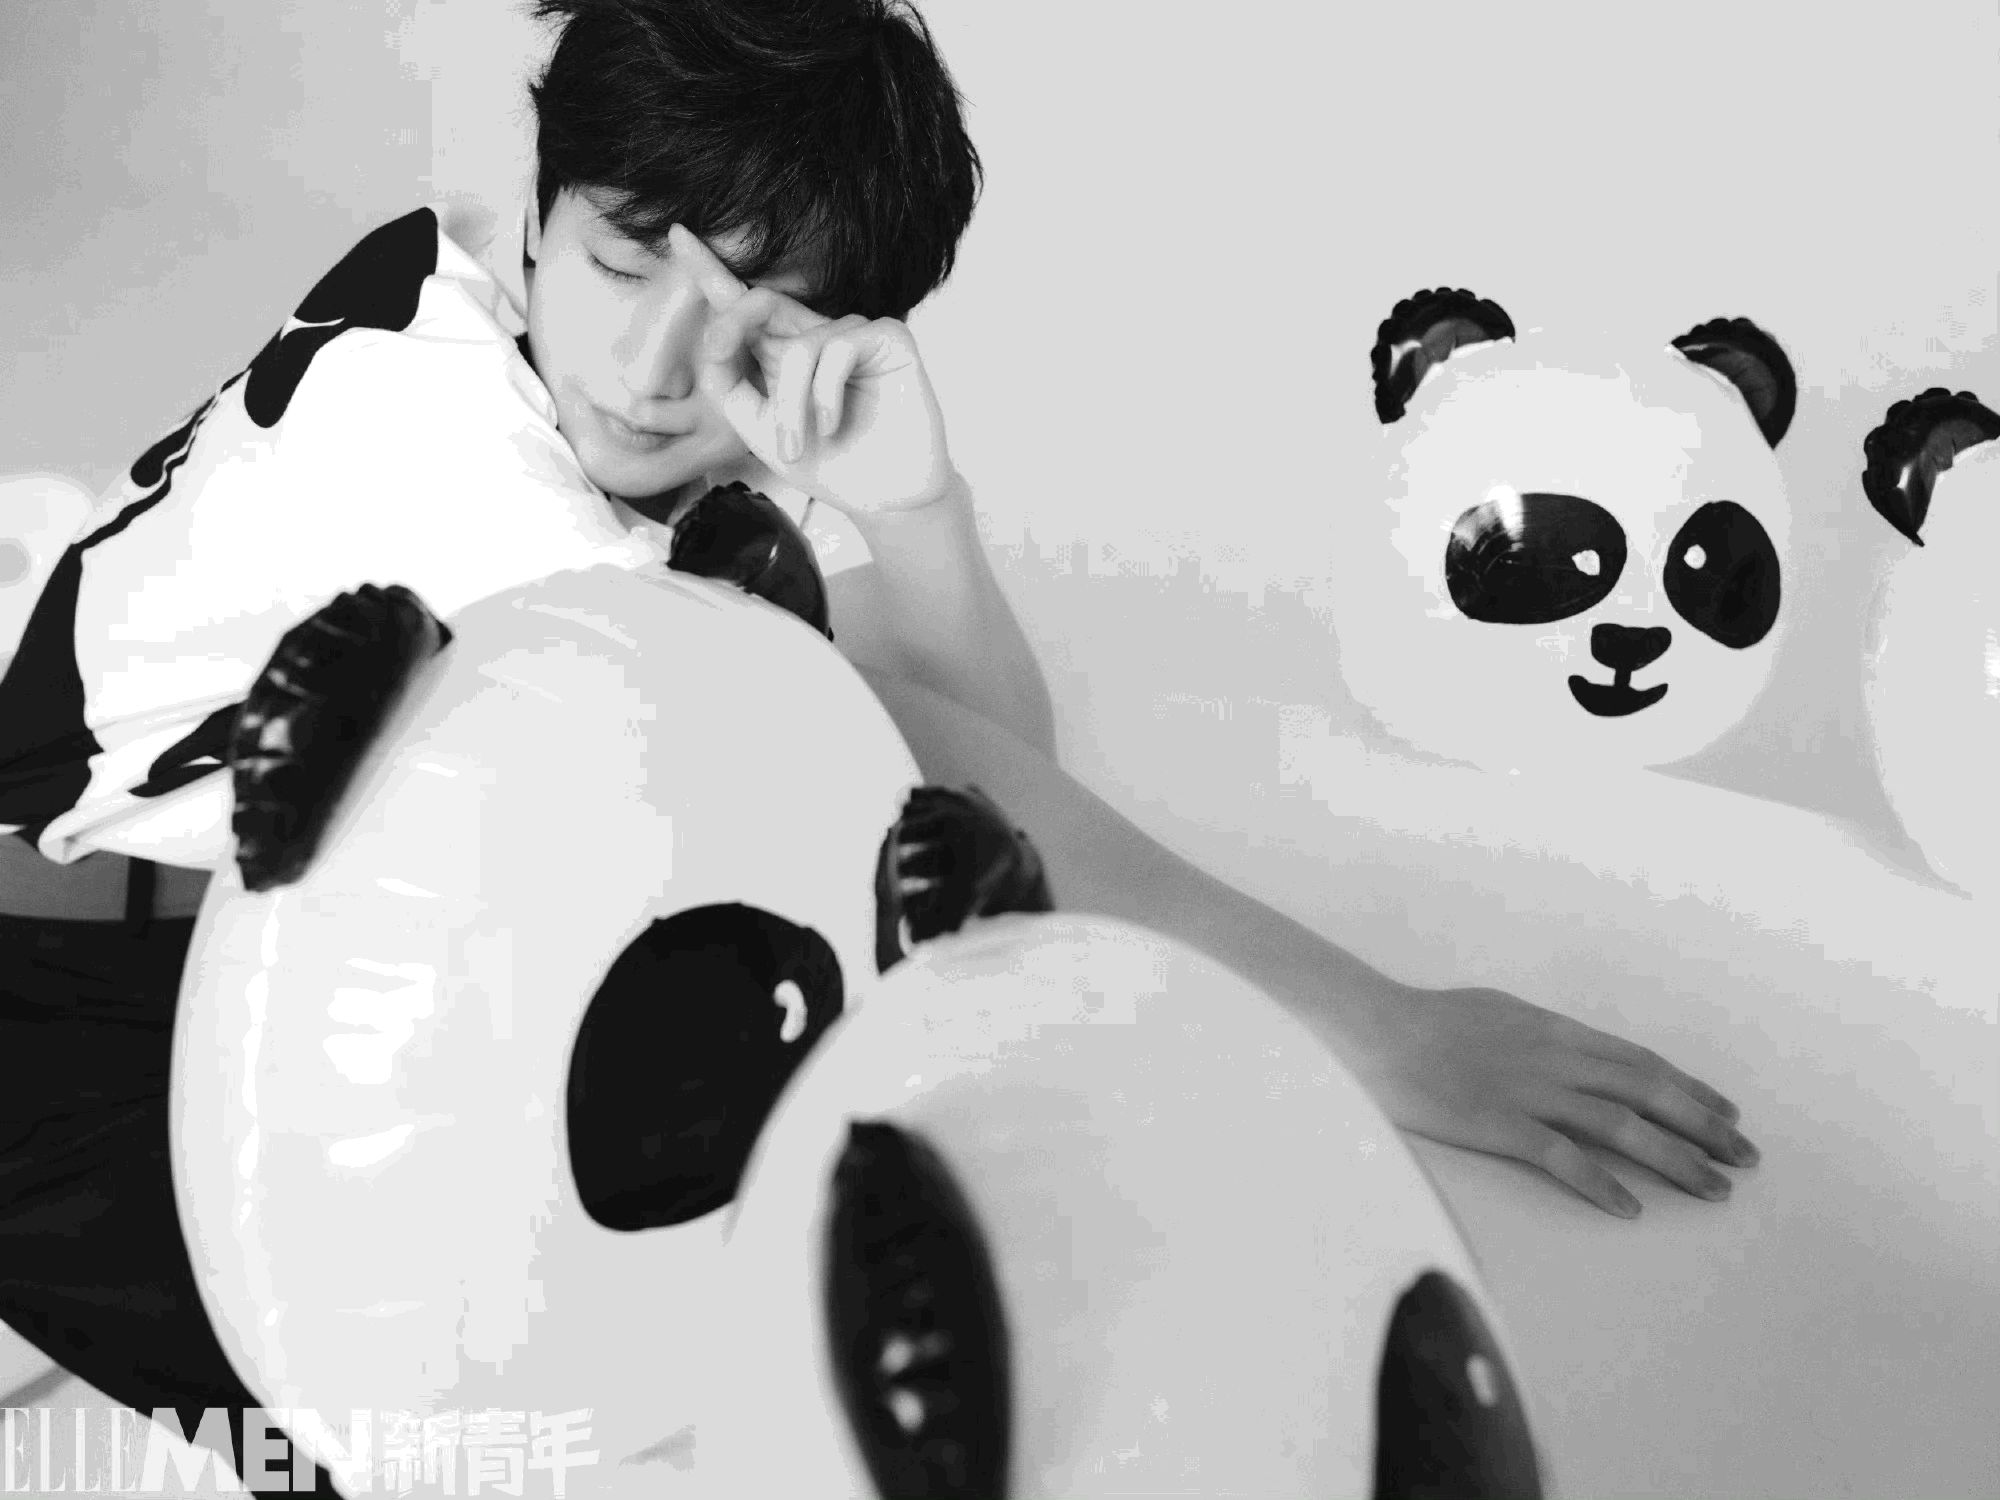 成毅与熊猫为伴少年感十足写真